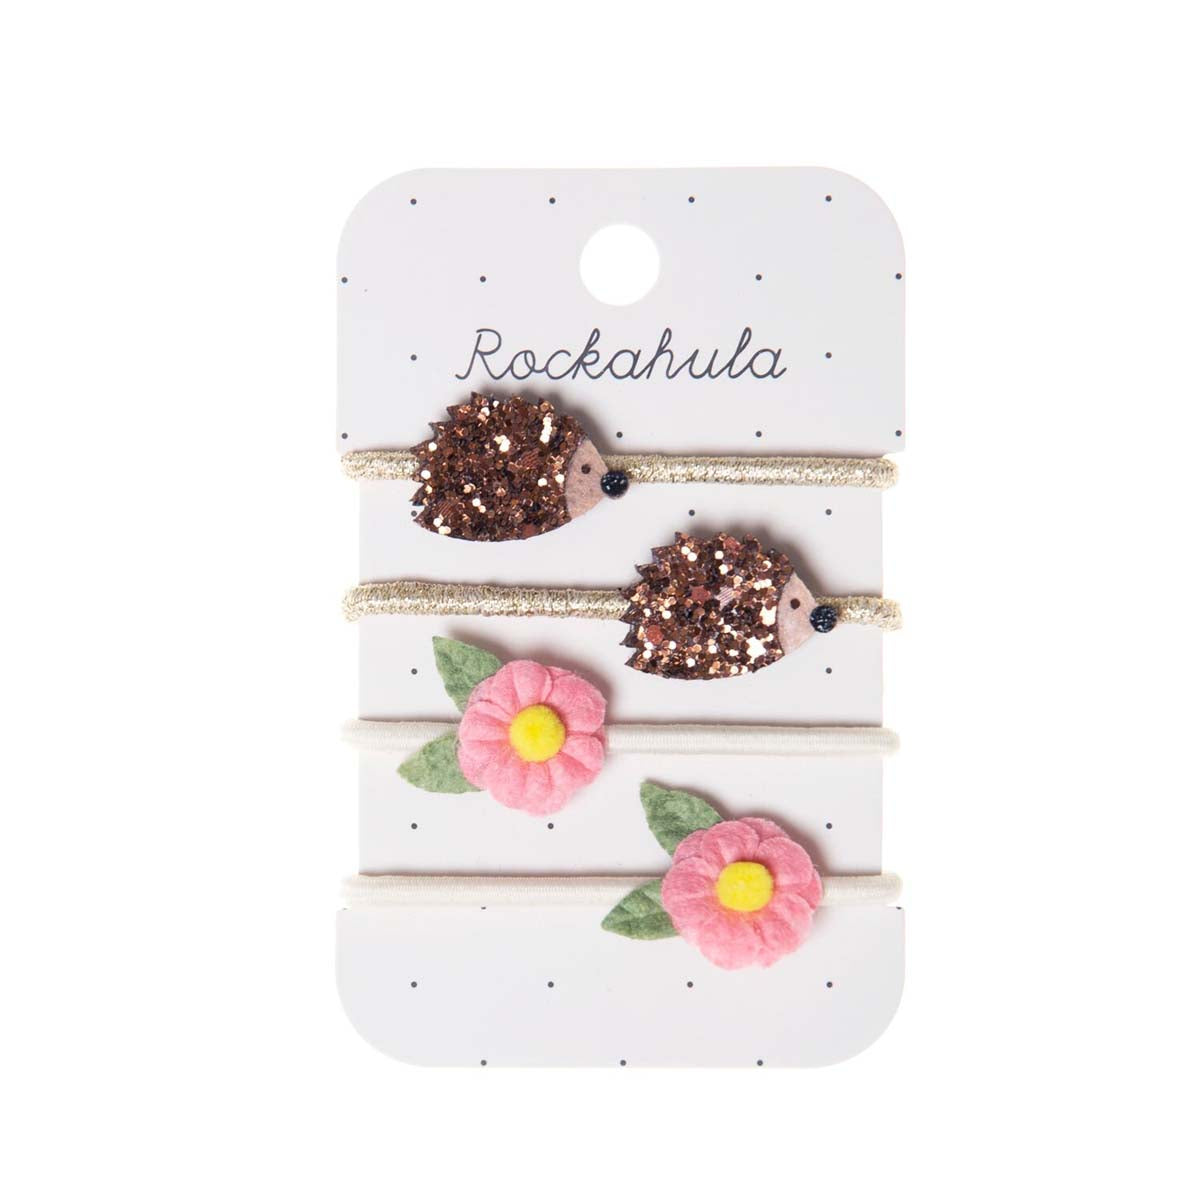 Cuteness overload met Rockahula’s hattie hedgehog elastiekjes! De set bestaat uit 4 elastieken: 2 goudkleurige elastieken met glitter egeltjes en 2 wit gekleurde elastieken met roze bloemen. VanZus